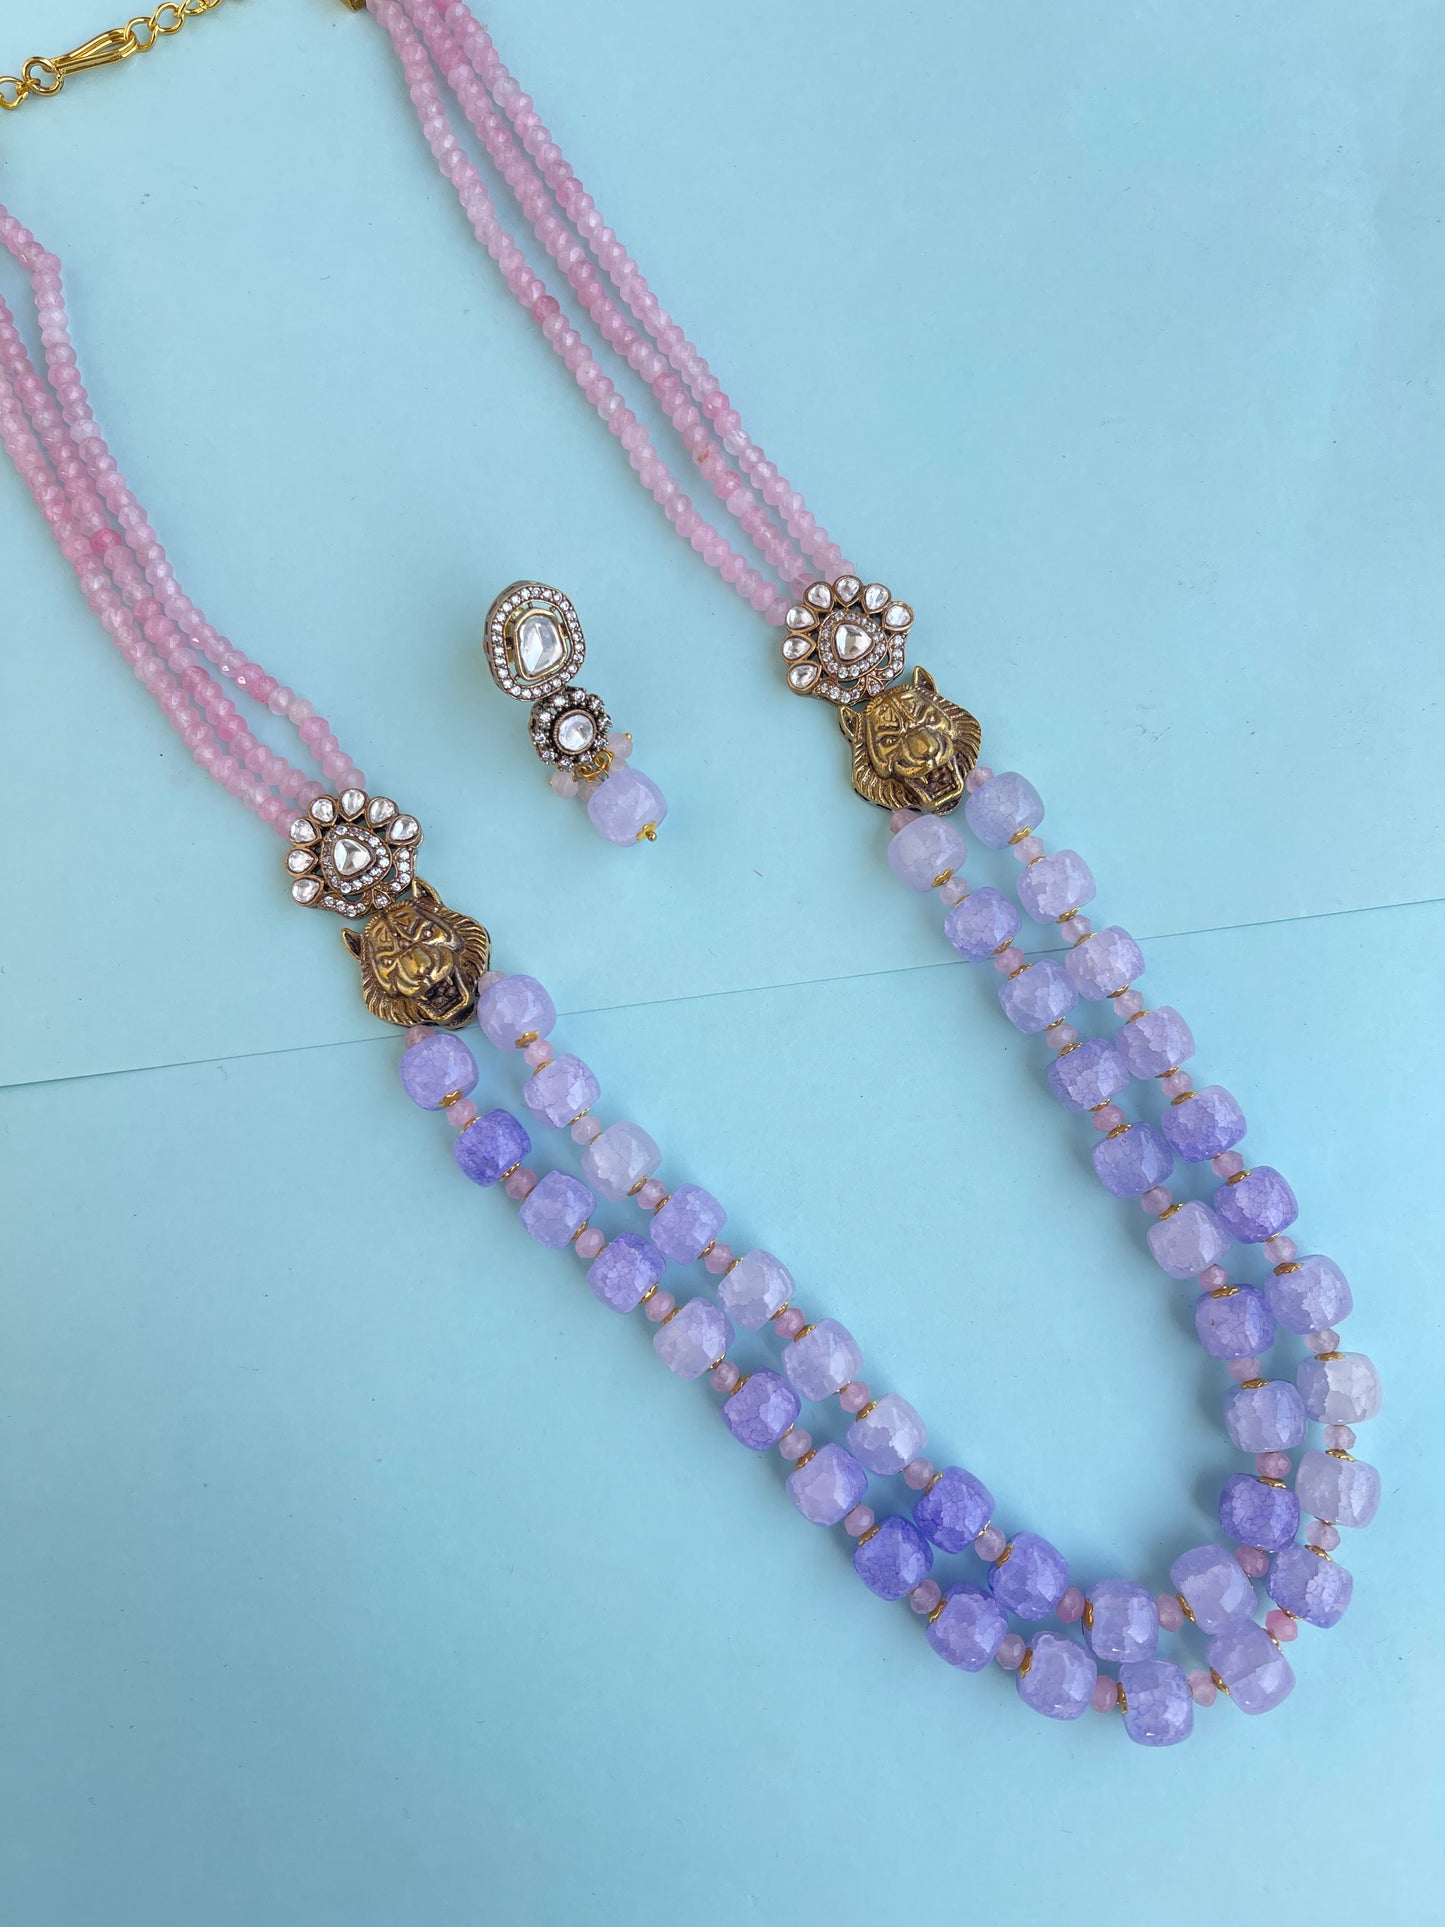 Sabyasachi inspired moissanite pendant long beads chain